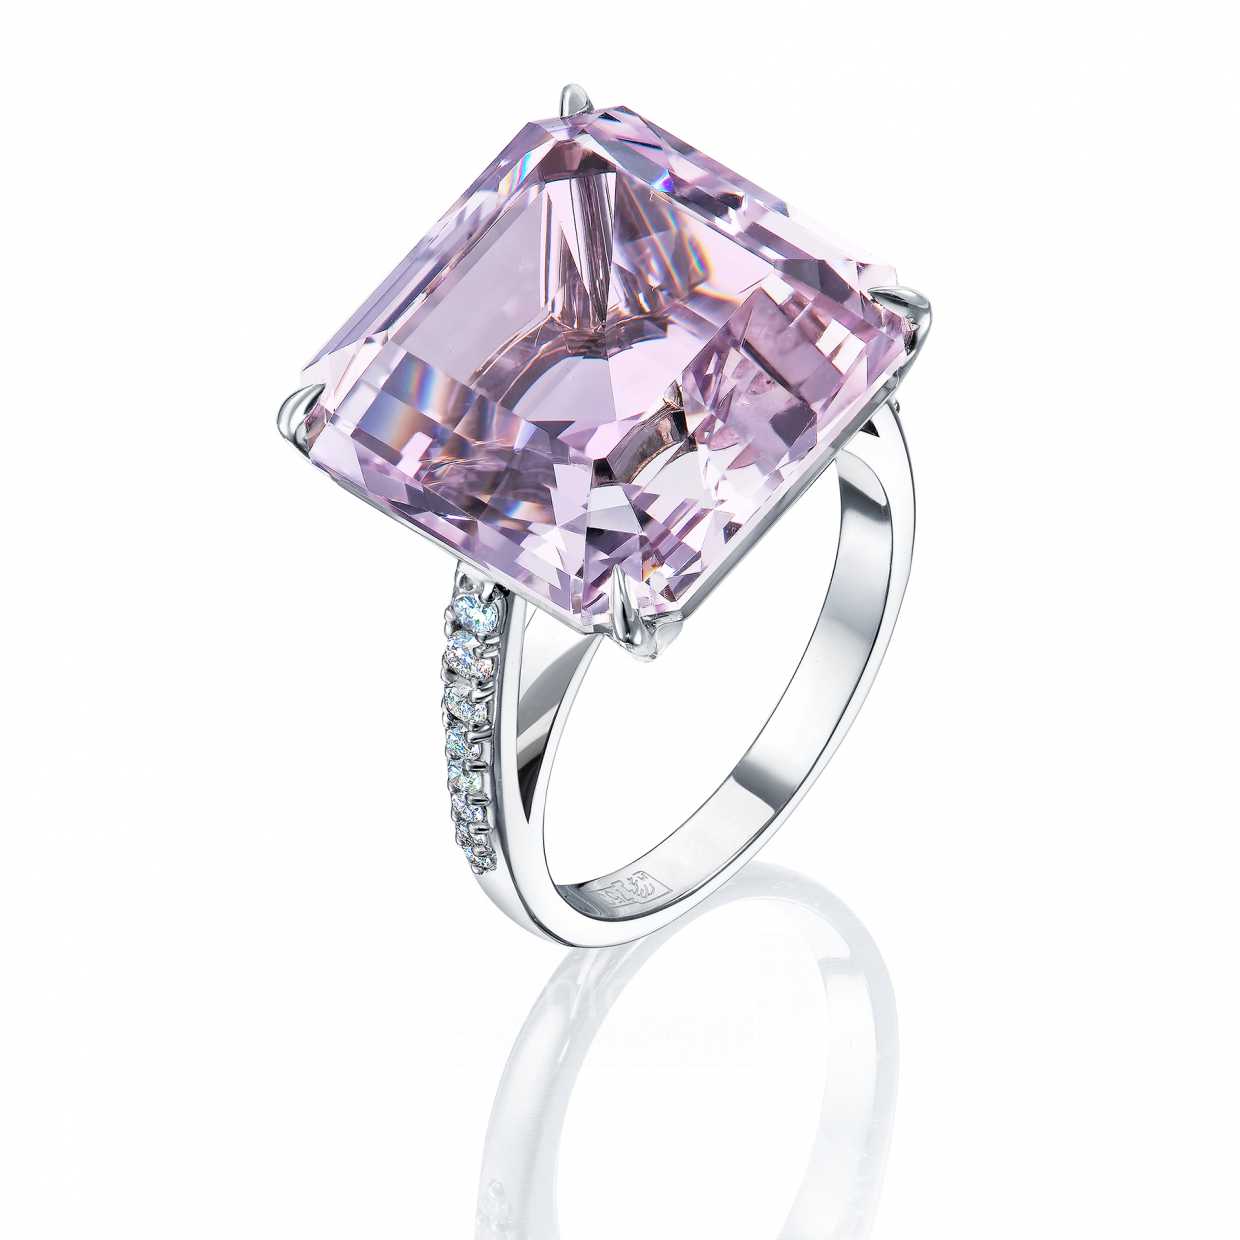 Кольцо с натуральным аметистом нежно-розового оттенка и бриллиантами 